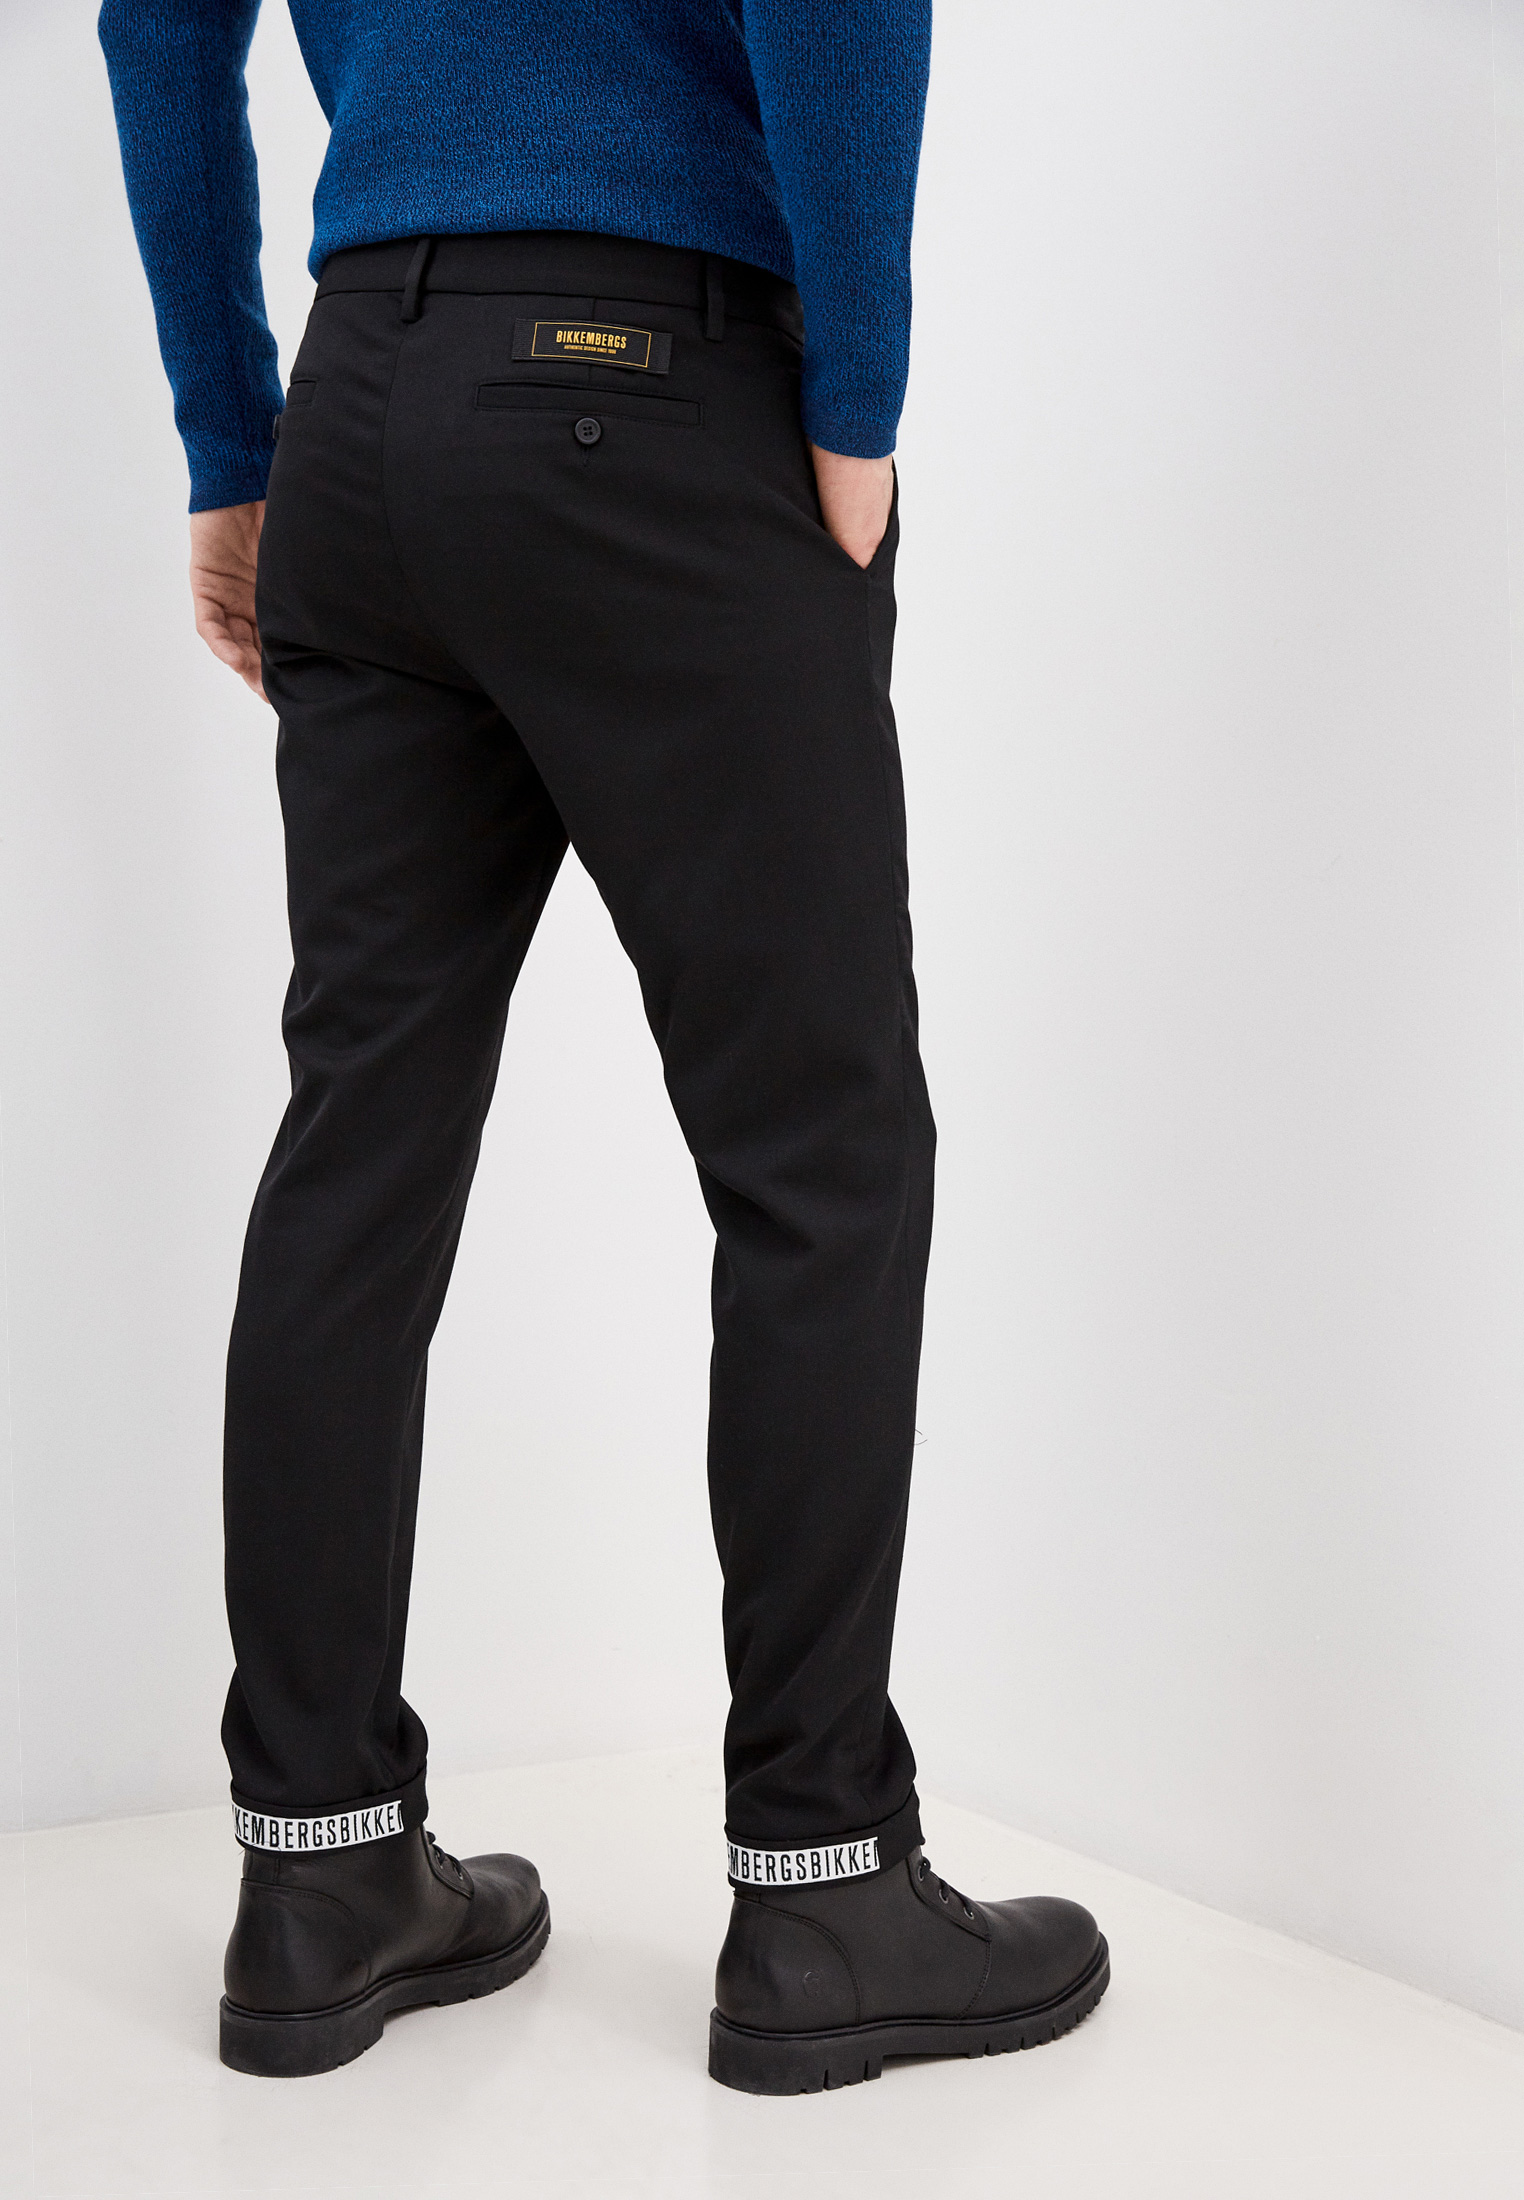 Мужские повседневные брюки Bikkembergs (Биккембергс) C P 001 00 S 3331: изображение 4